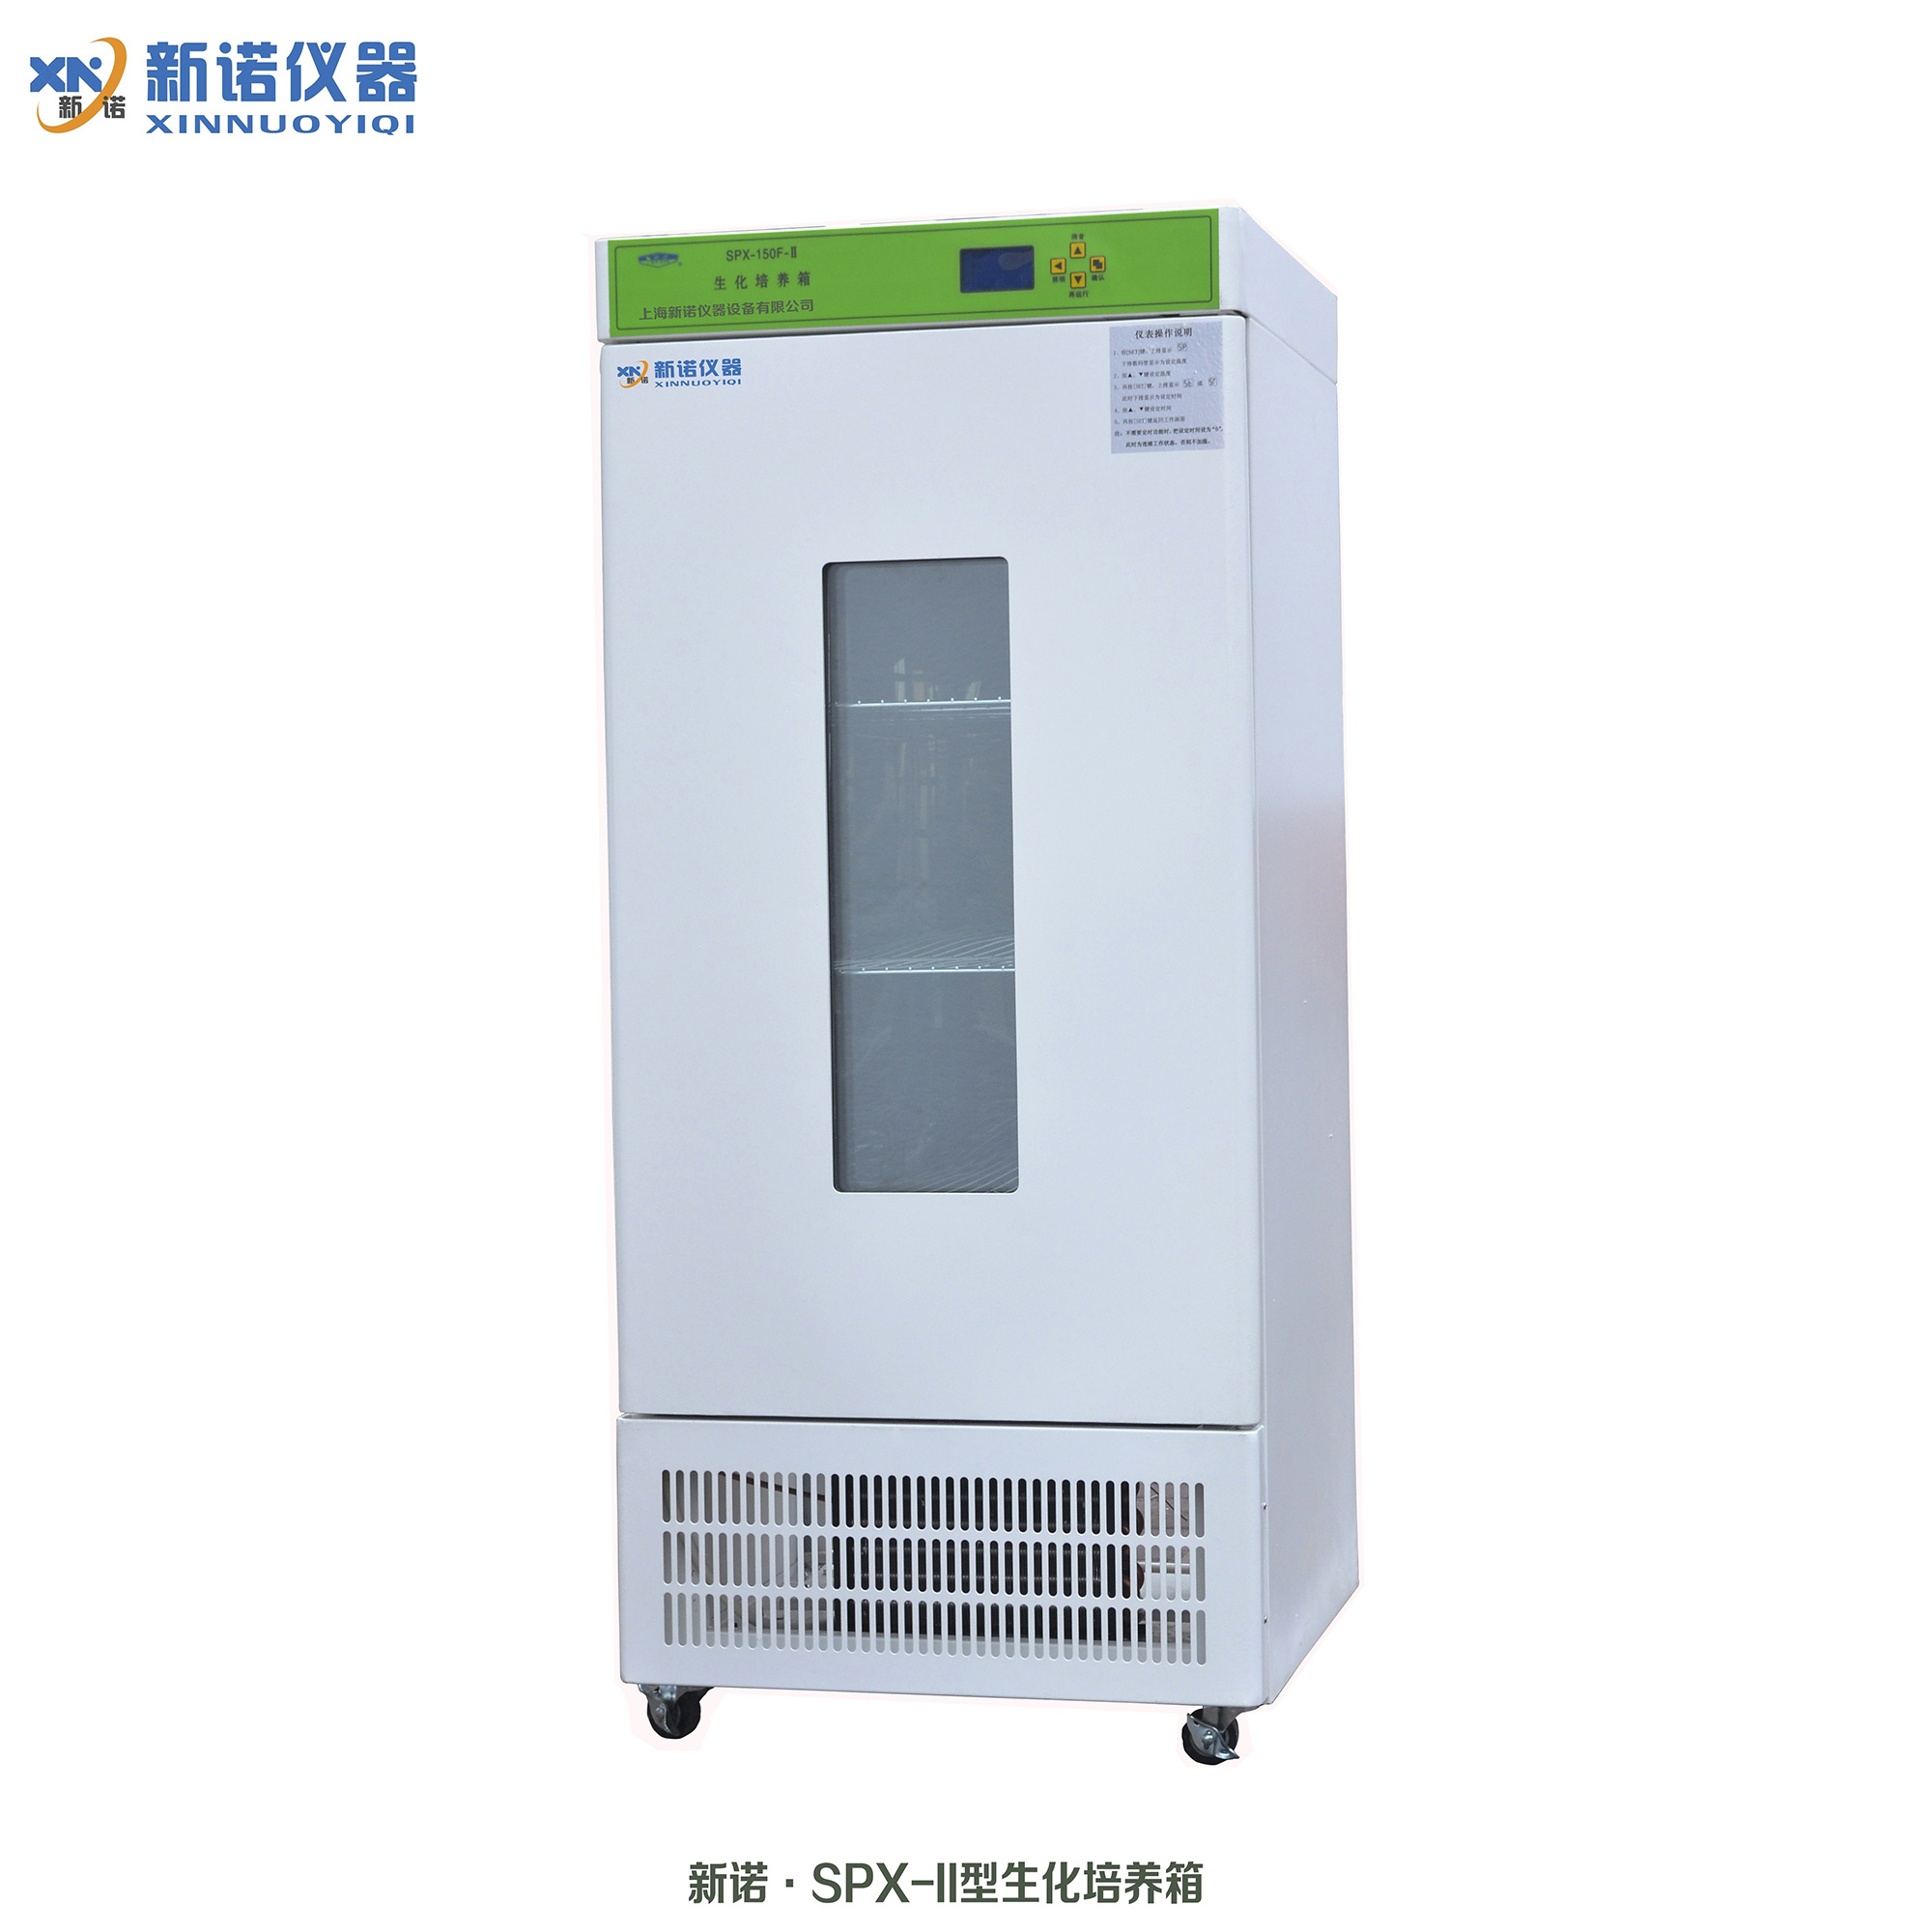 上海新诺 SPX-II系列生化培养箱 制造